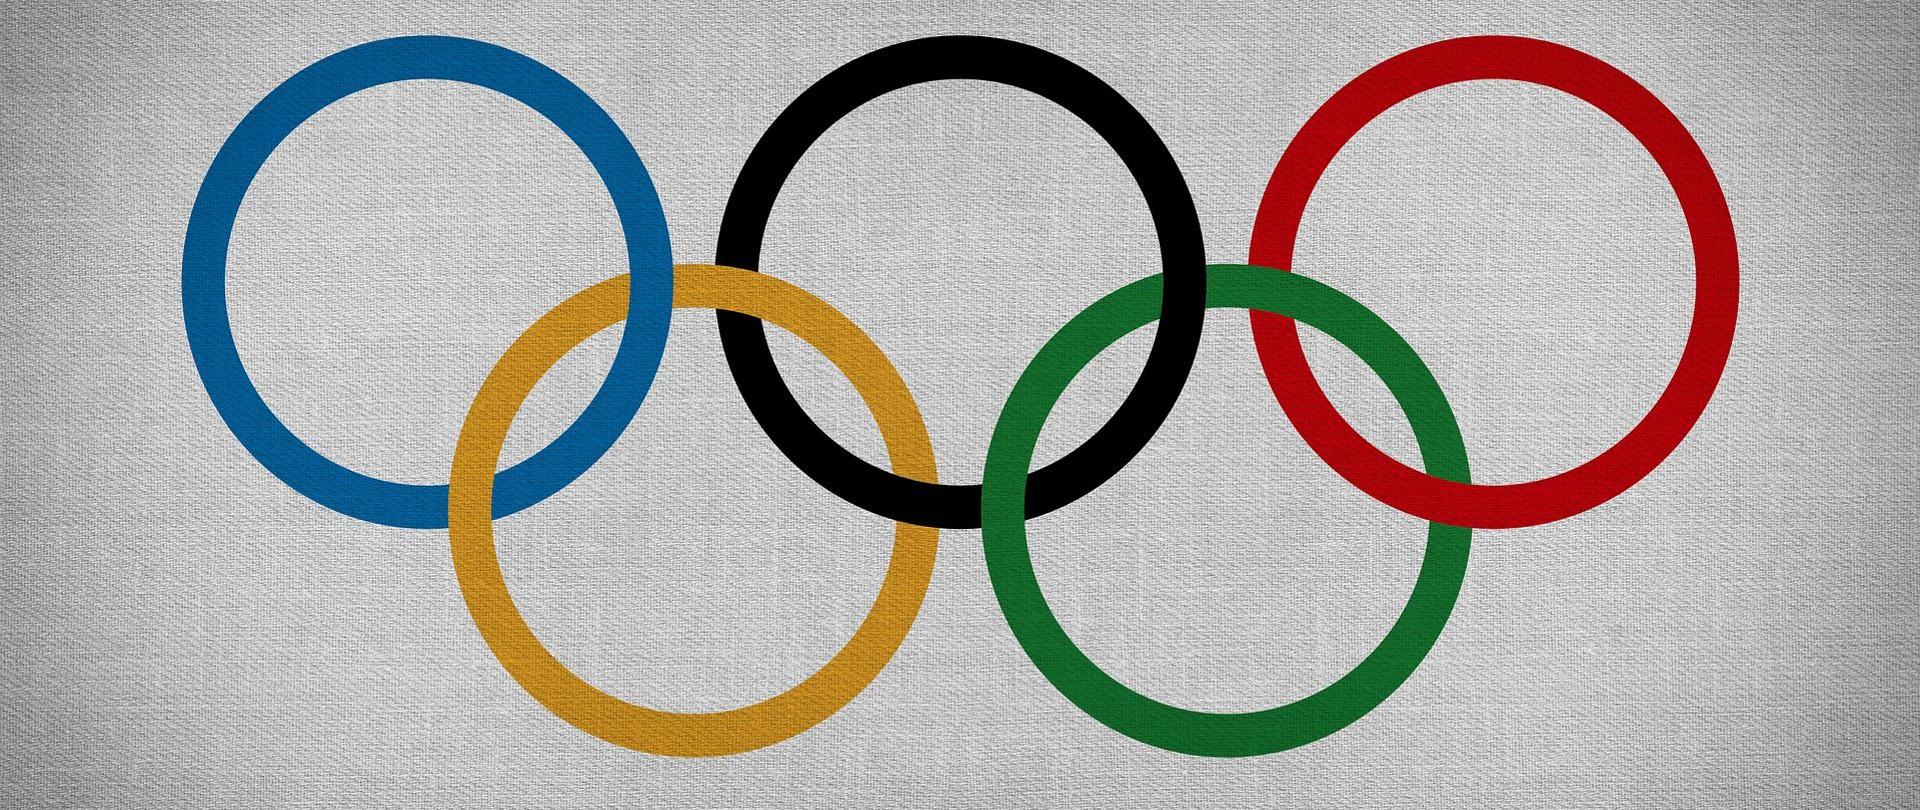 Symbole olimpiady - przeplatające się kolorowe koła.